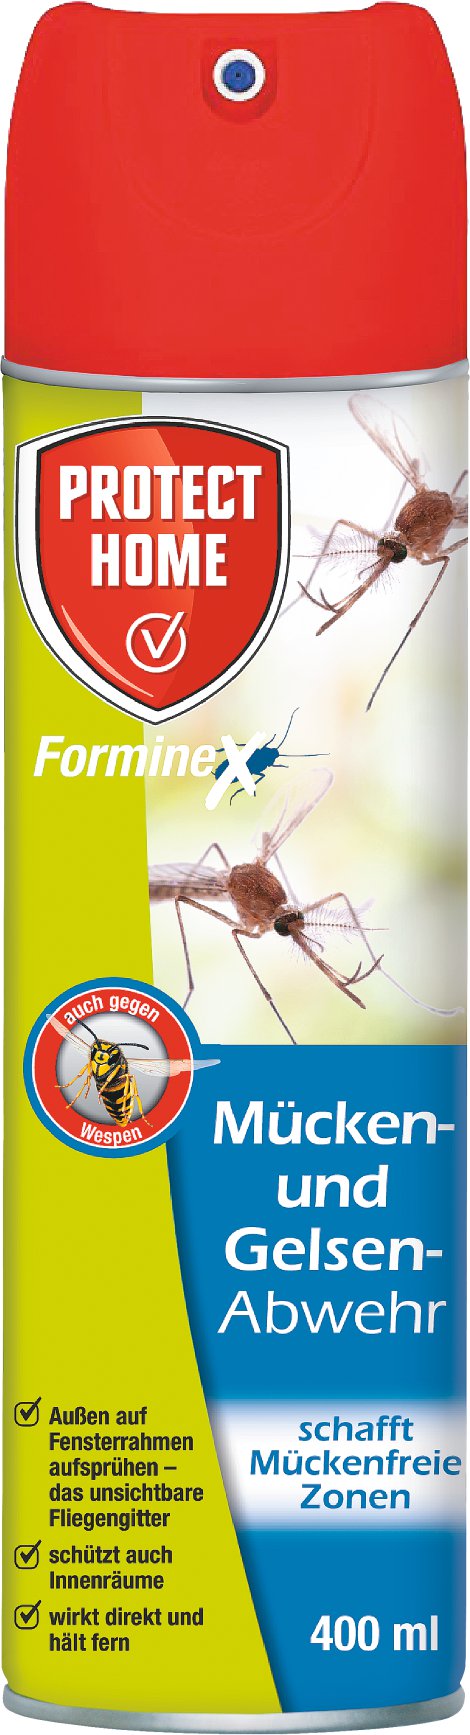 PROTECT HOME FormineX Mücken- und Gelsen- Abwehr 400 ml